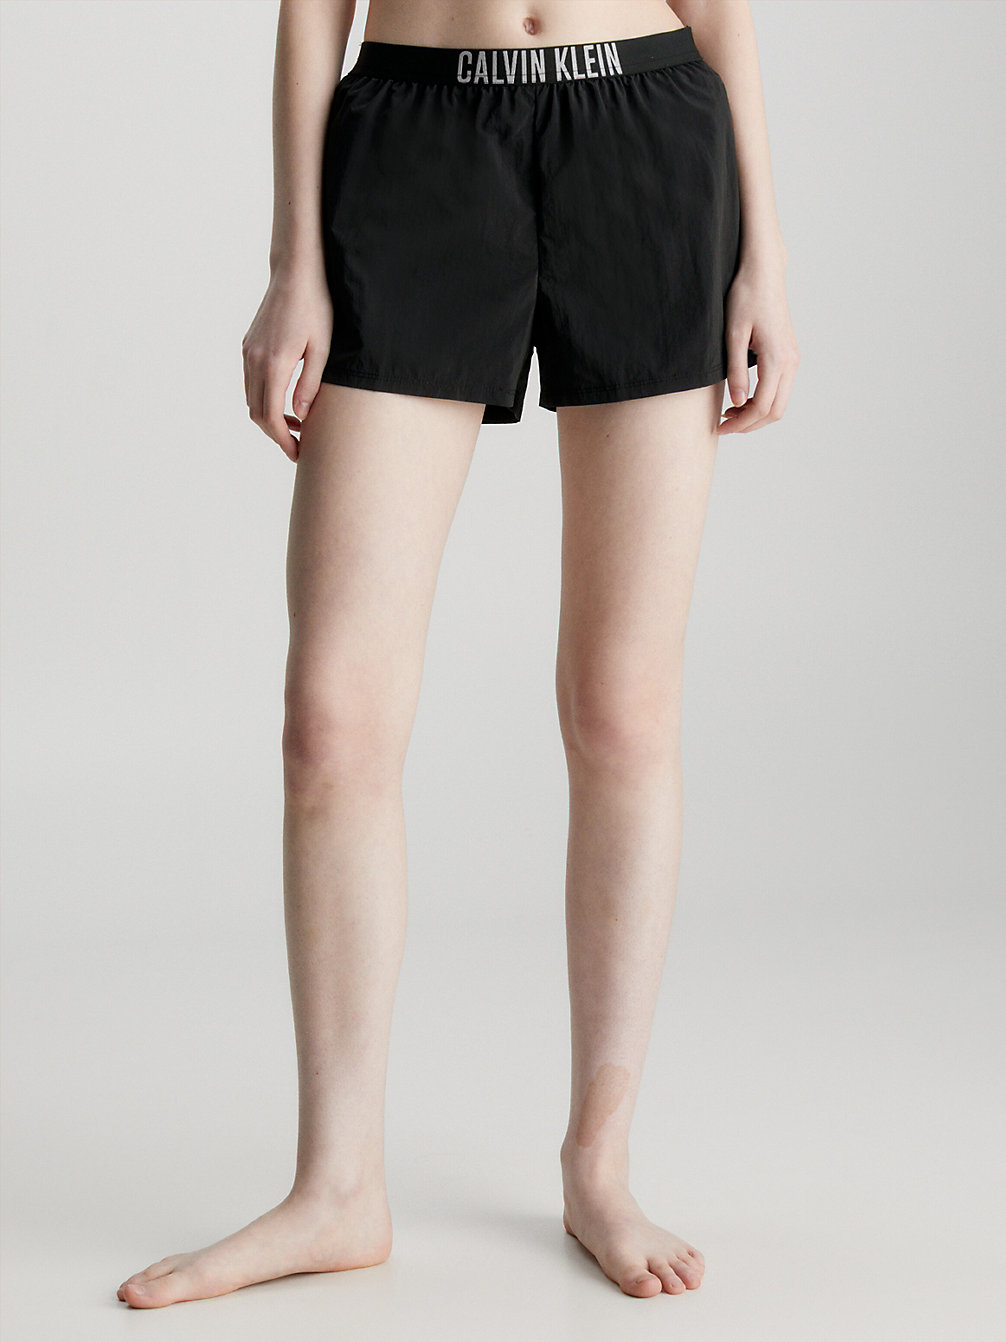 PVH BLACK Beach Shorts - Intense Power undefined women Calvin Klein